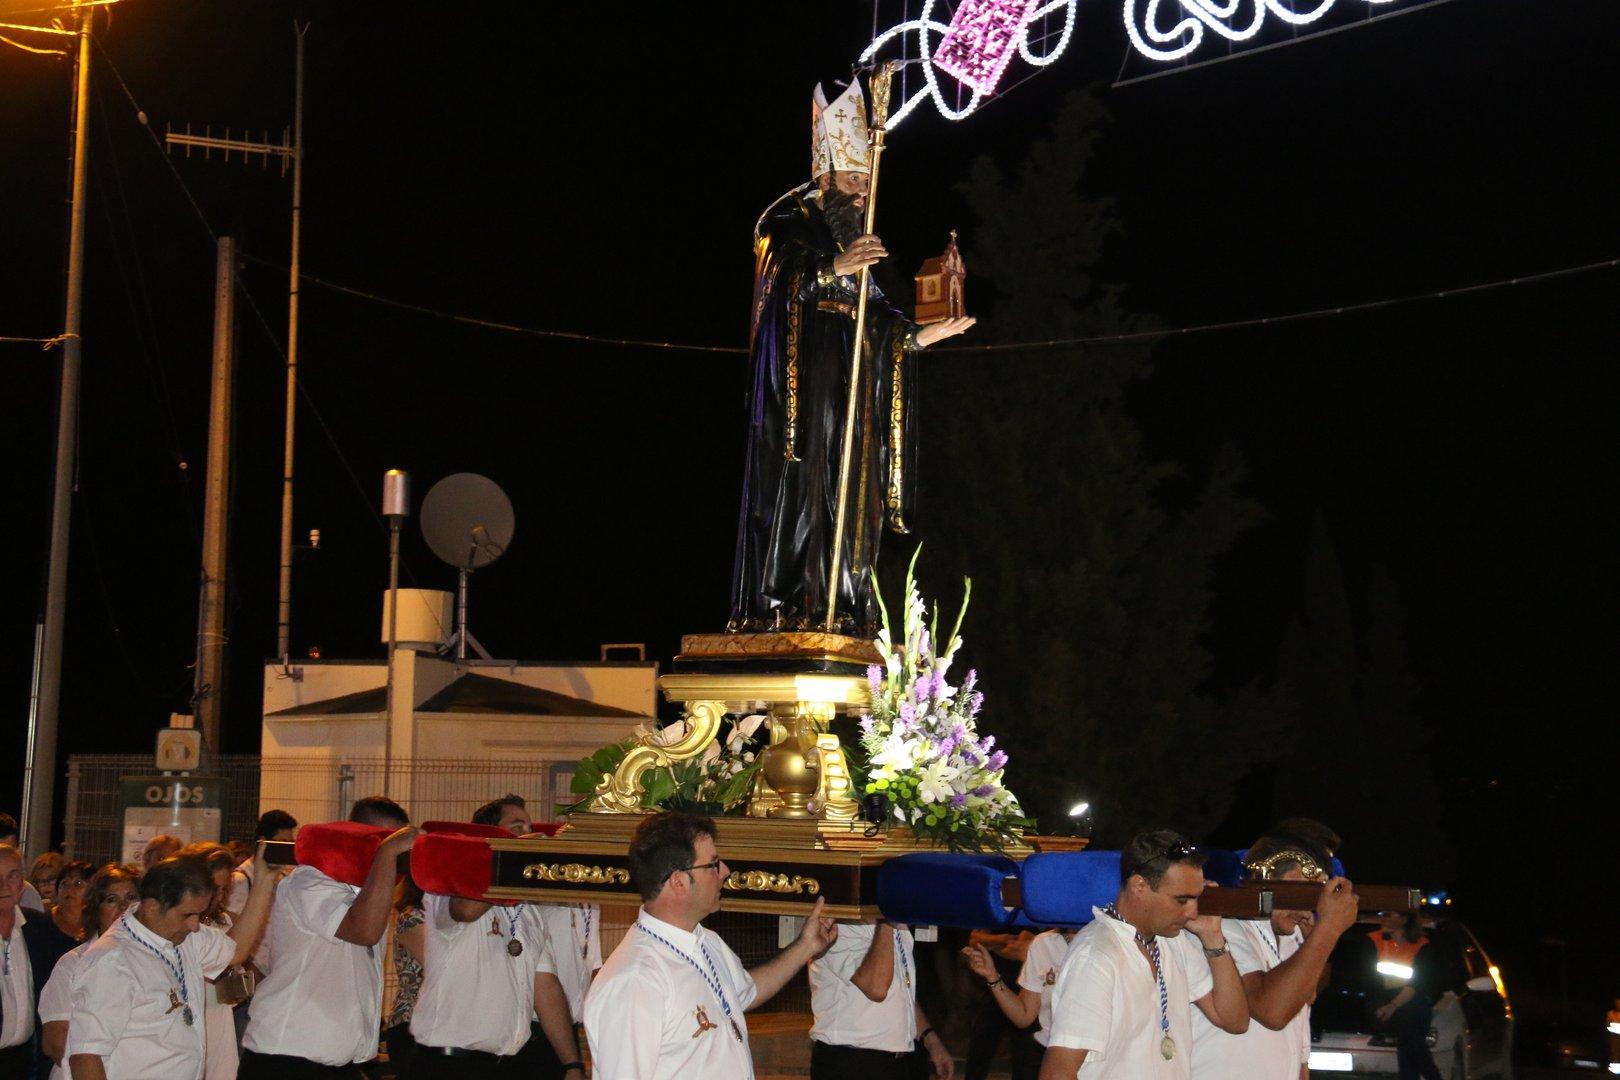 Fiestas de Campillo en Ojós 2017-Procesión